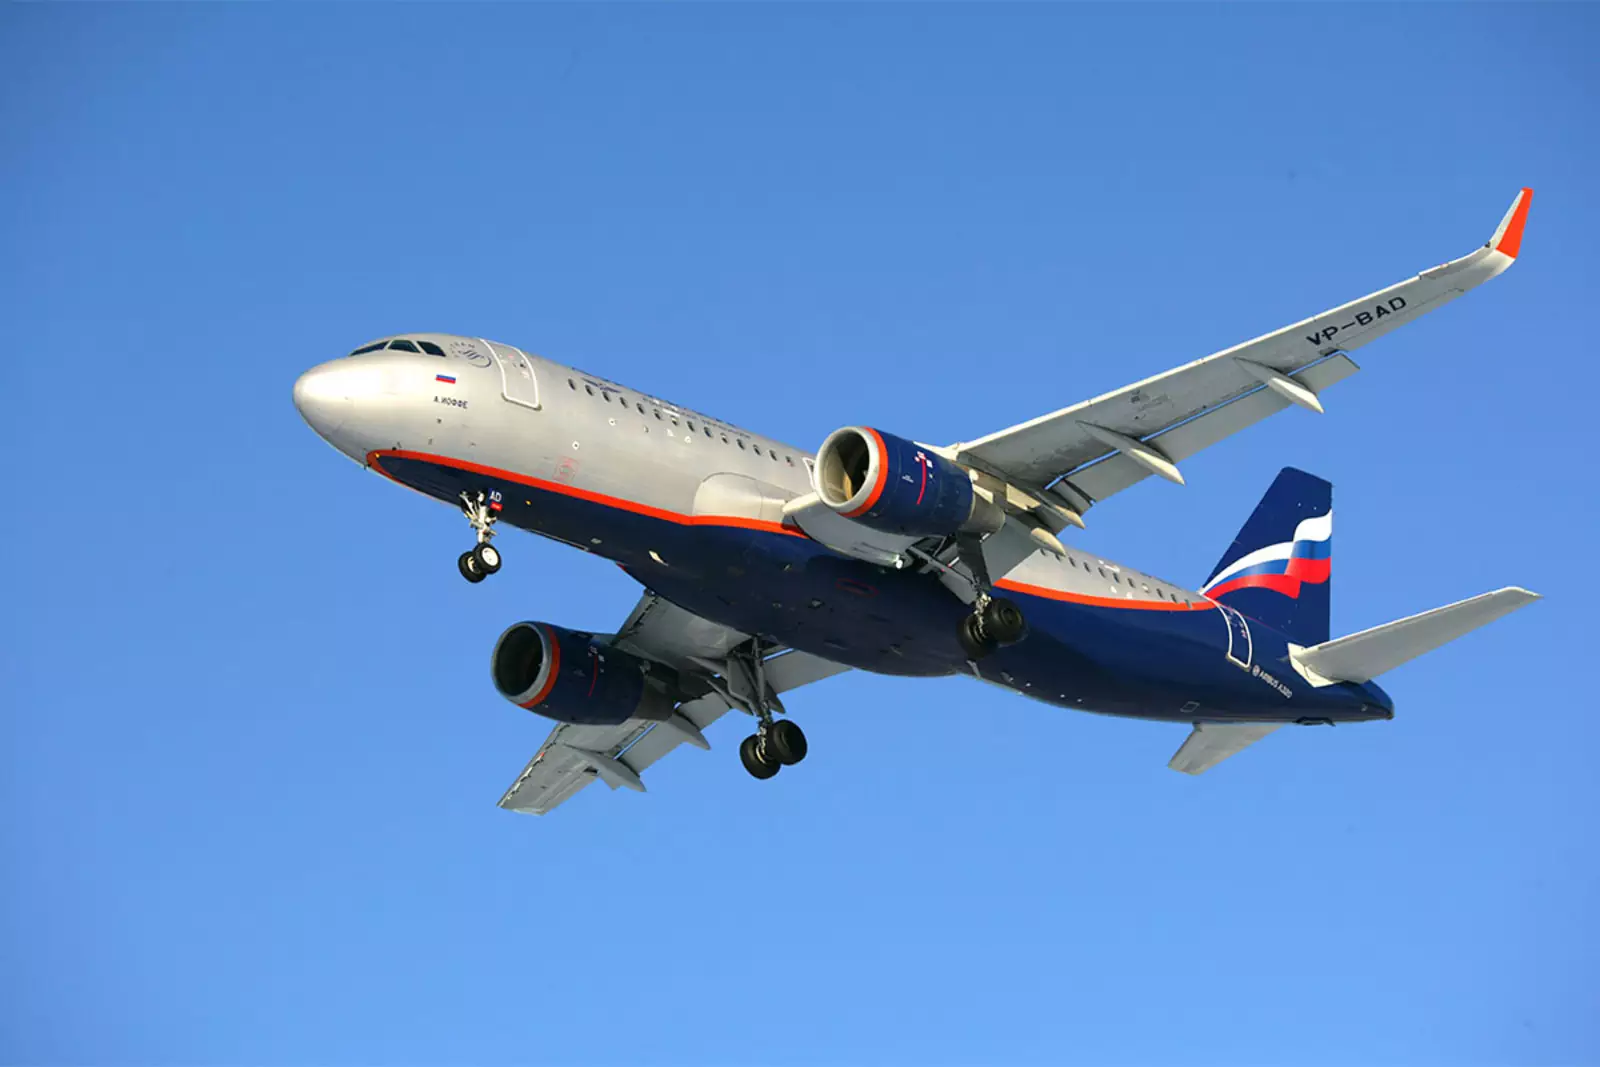 Пассажирский самолет Airbus A320-214 (VP-BAD) "А.Иоффе" (Александр Иоффе) авиакомпании "Аэрофлот" во время посадки в аэропорту Шереметьево.